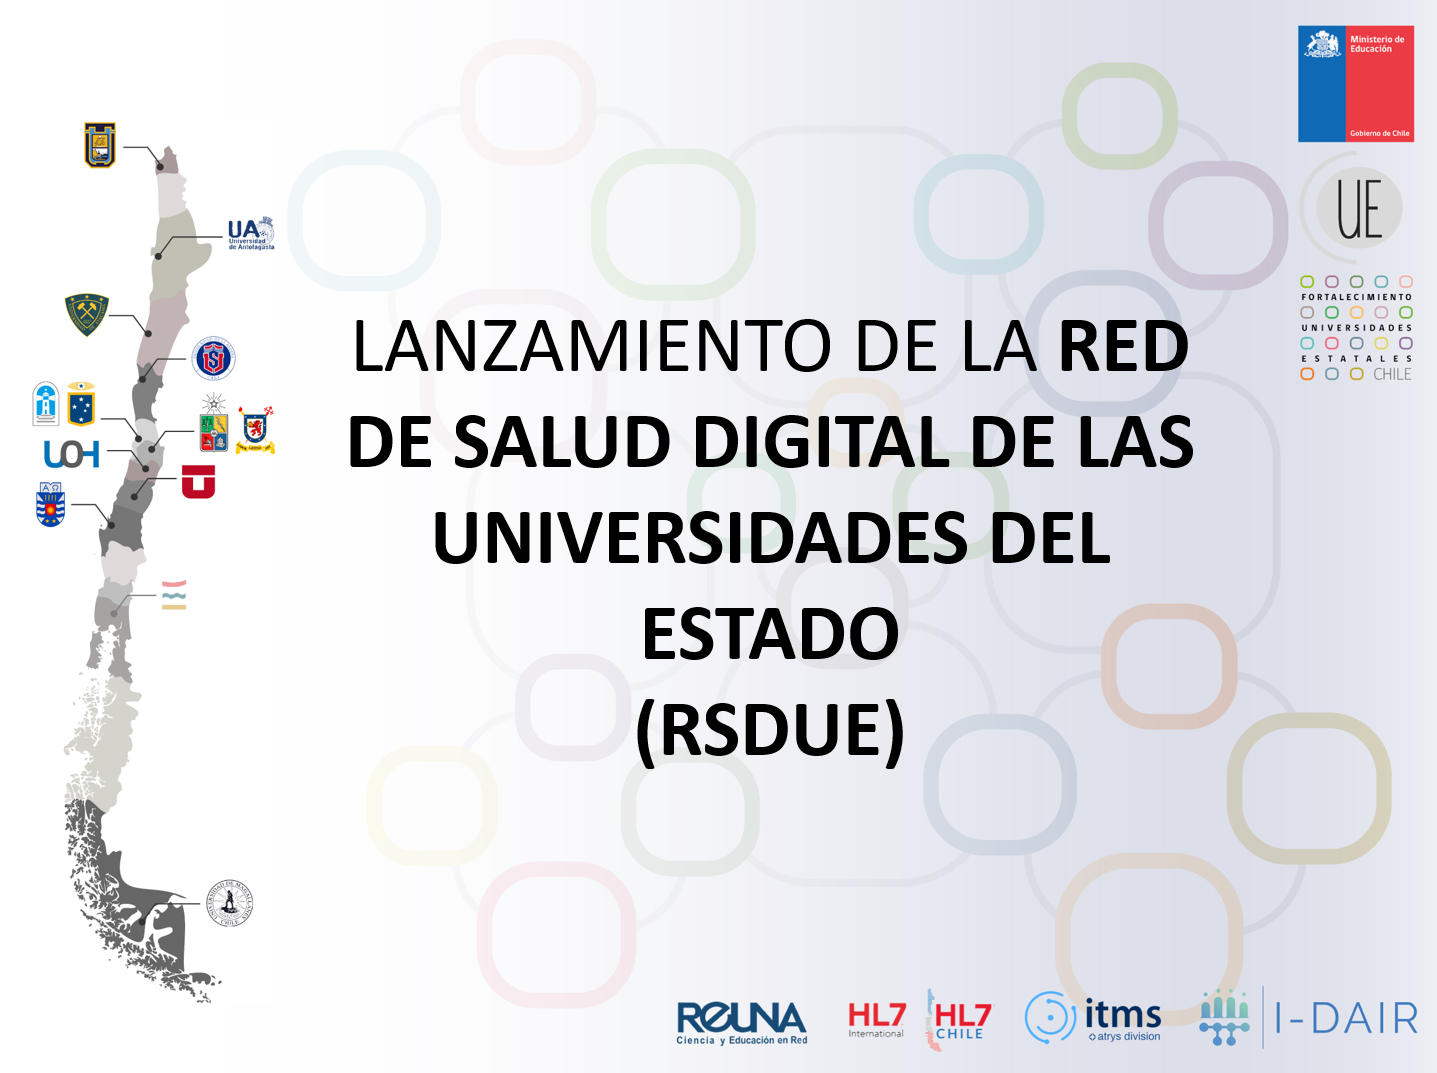 Lanzamiento Red de Salud Digital de las Universidades del Estado (RSDUE)